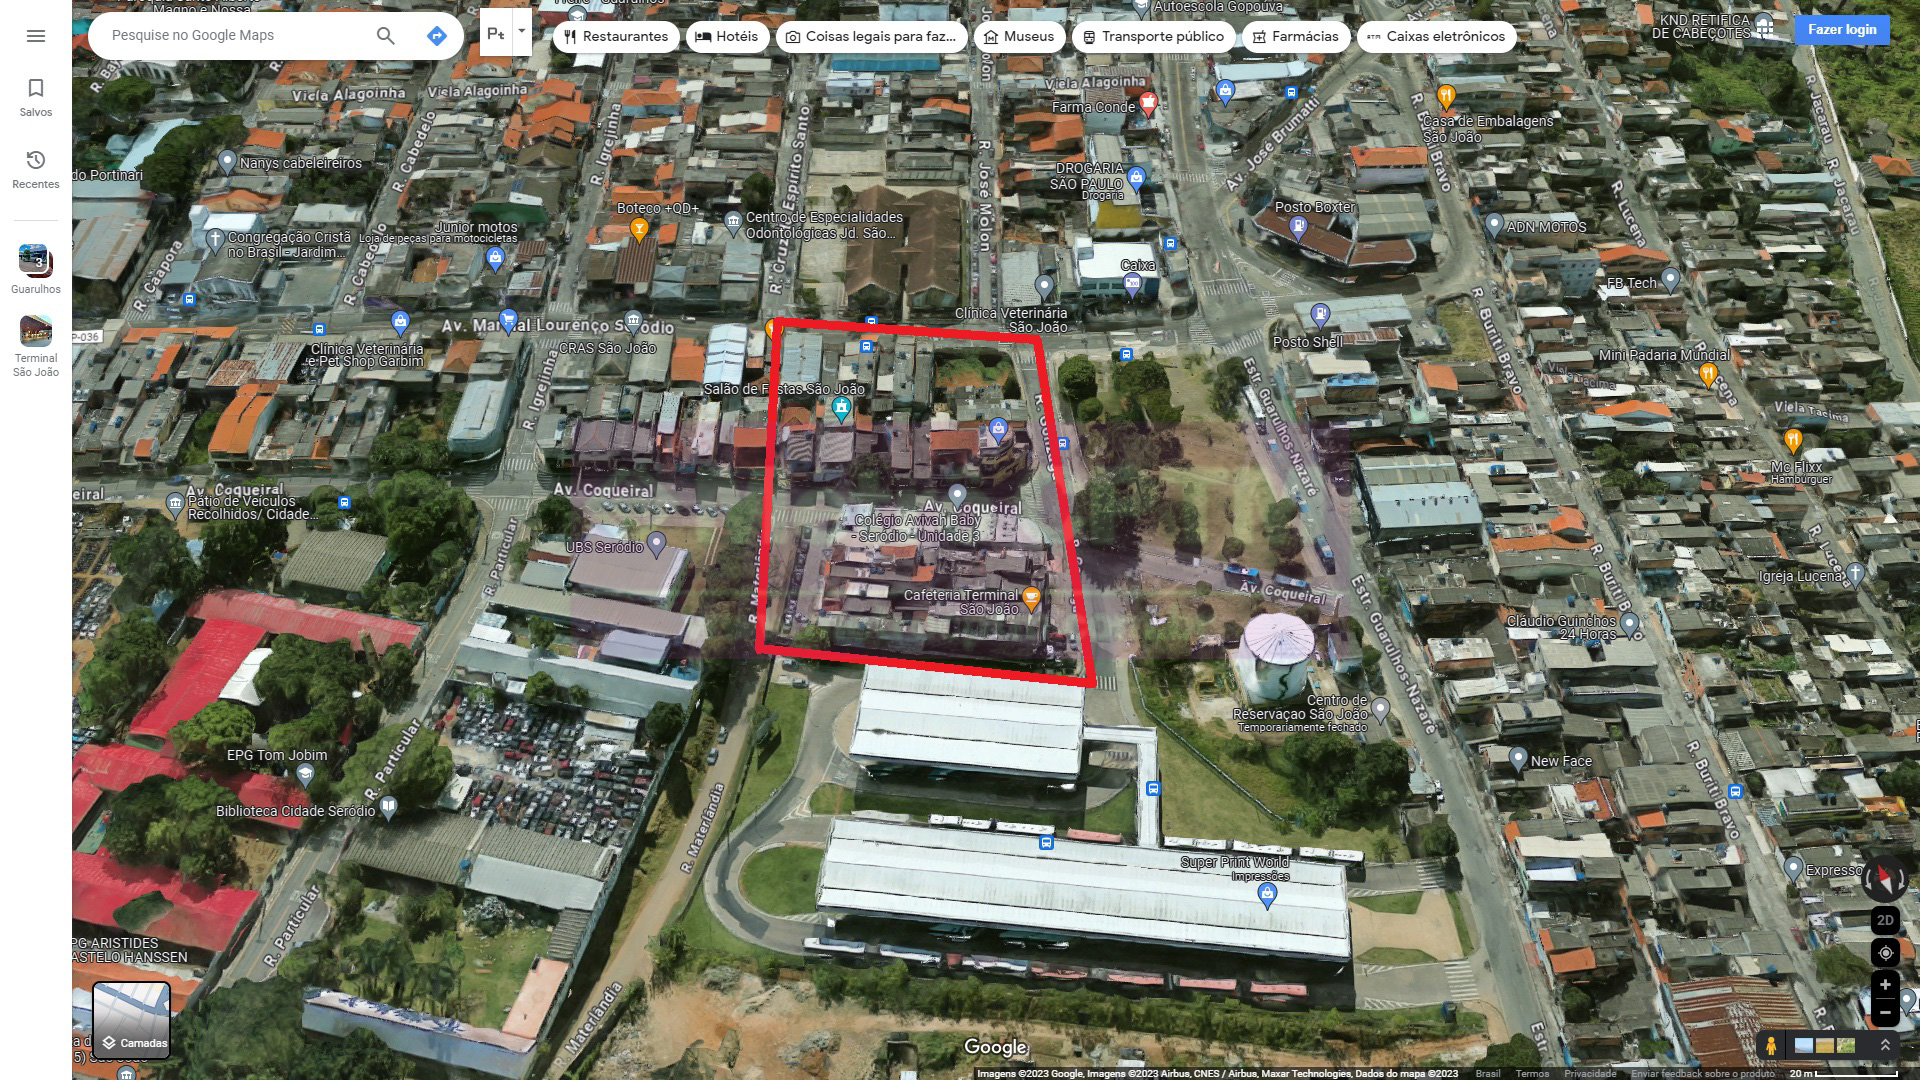 Possivel localização da estação São João (Google Maps)